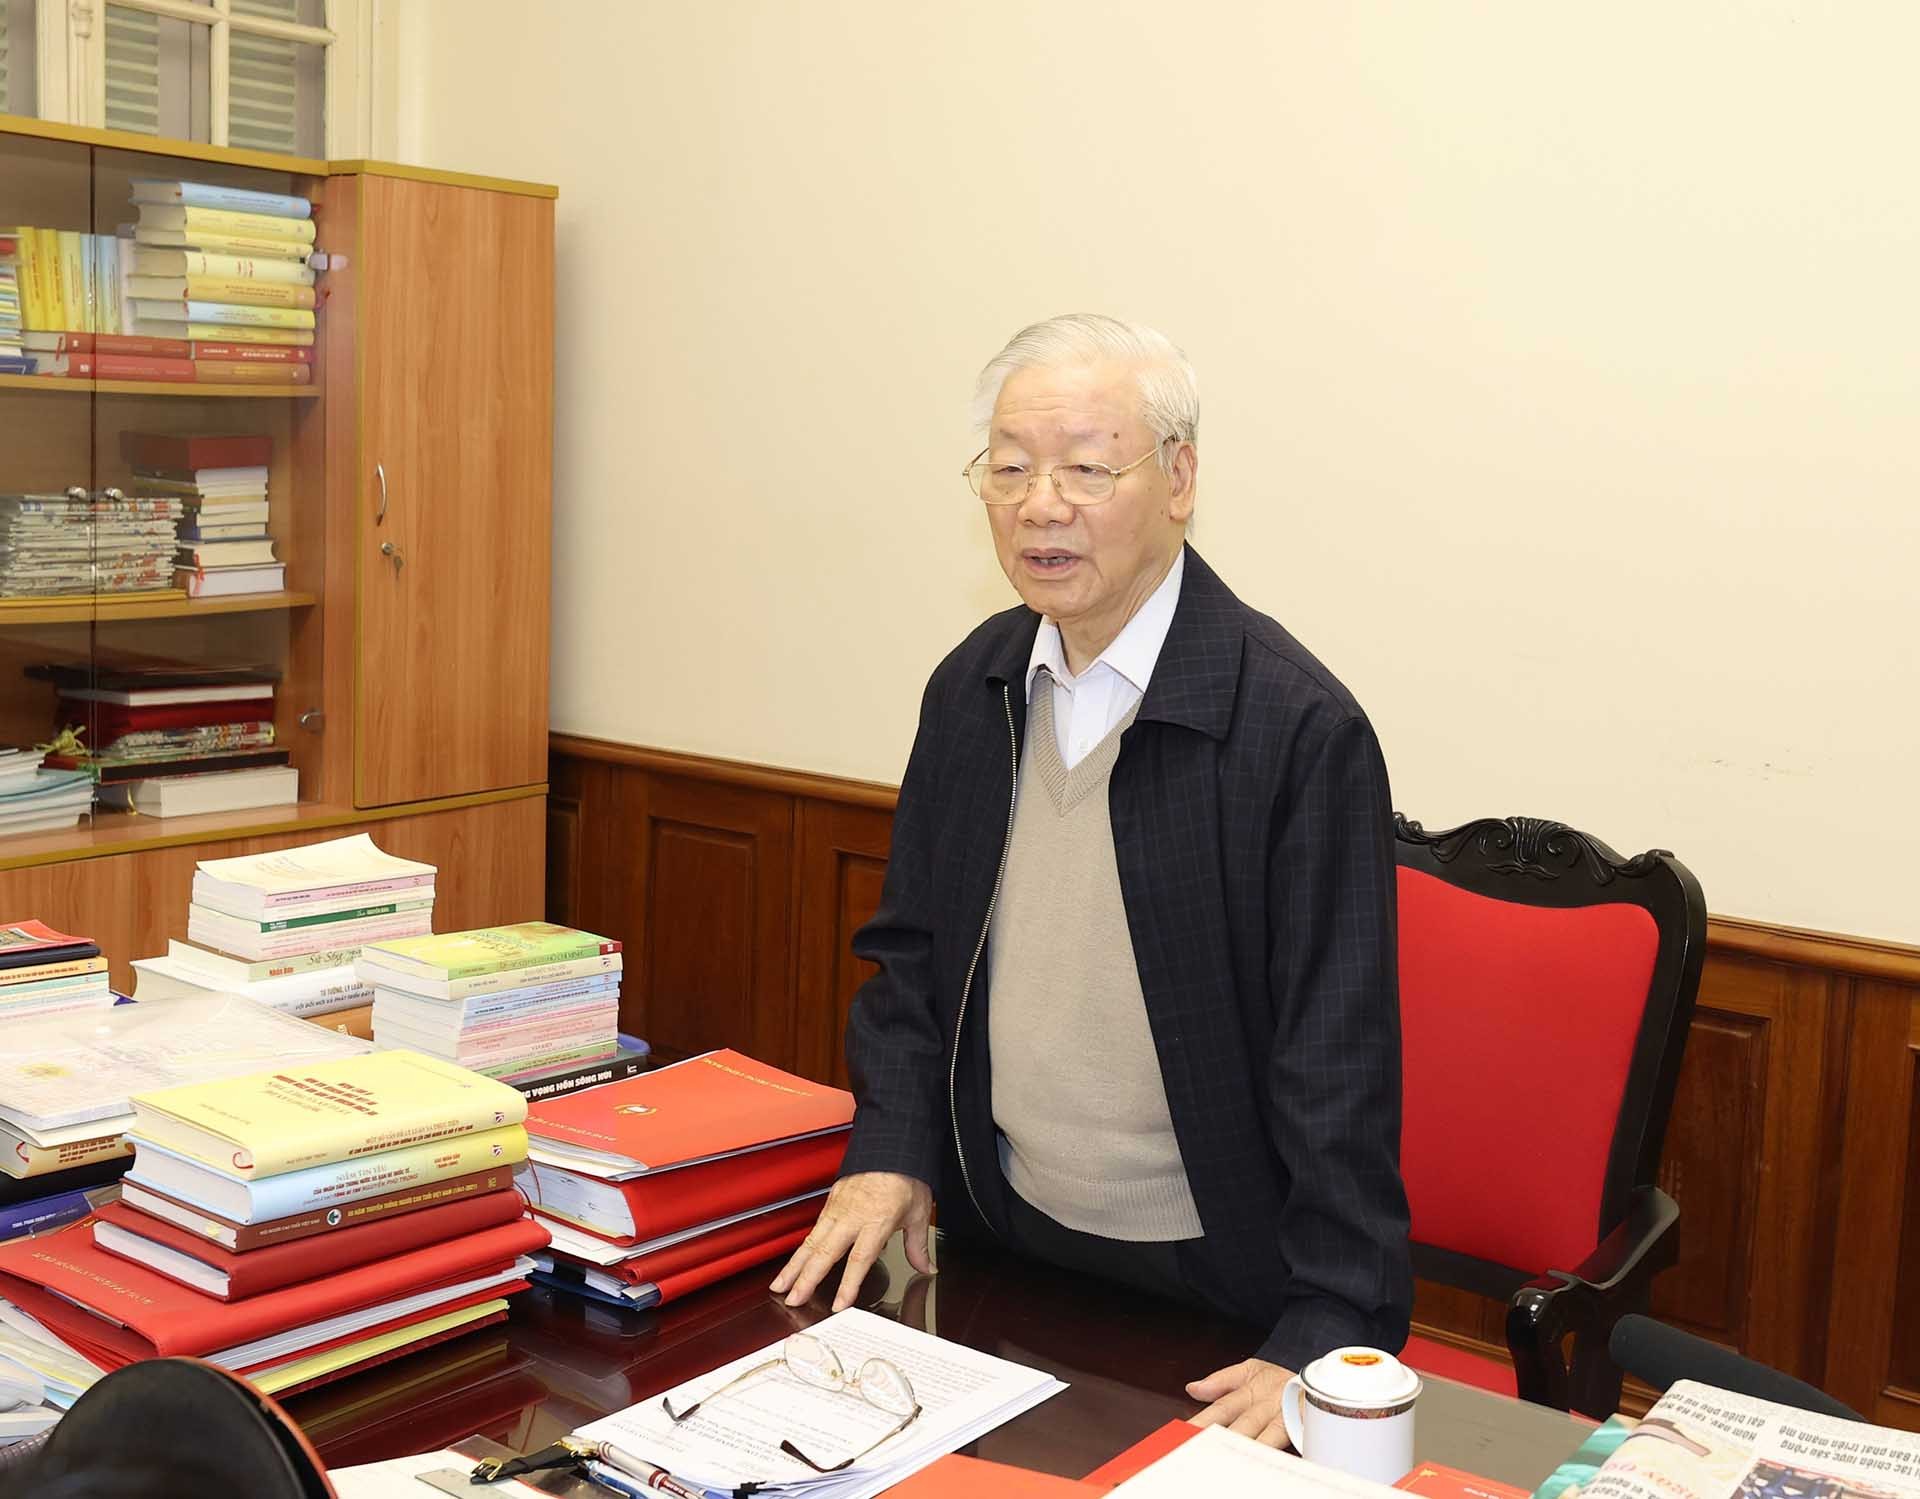 Tổng Bí thư Nguyễn Phú Trọng phát biểu kết luận cuộc họp. (Nguồn: TTXVN)